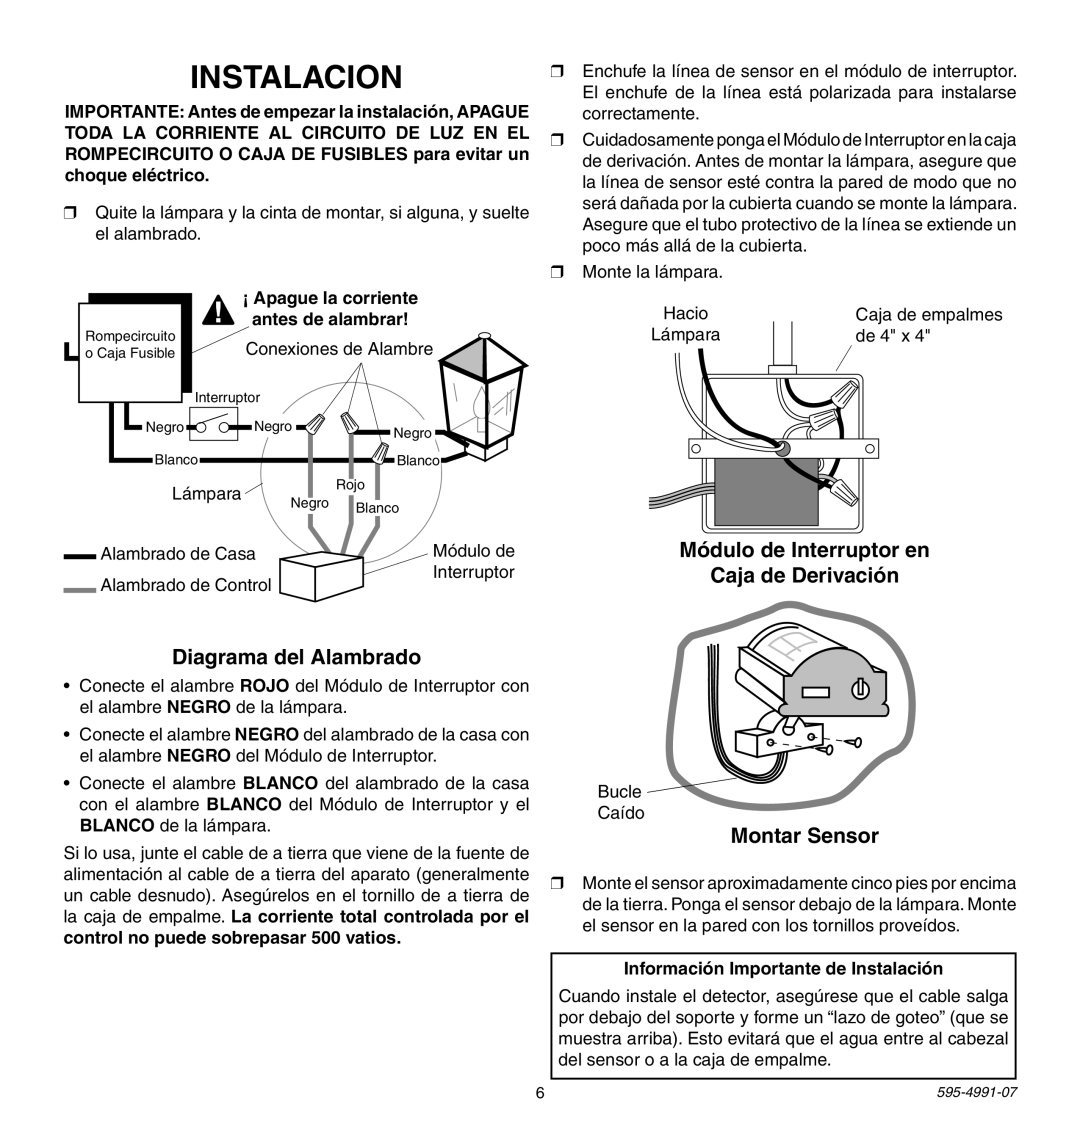 Heath Zenith SL-5210 manual Diagrama del Alambrado, Módulo de Interruptor en Caja de Derivación, Montar Sensor 